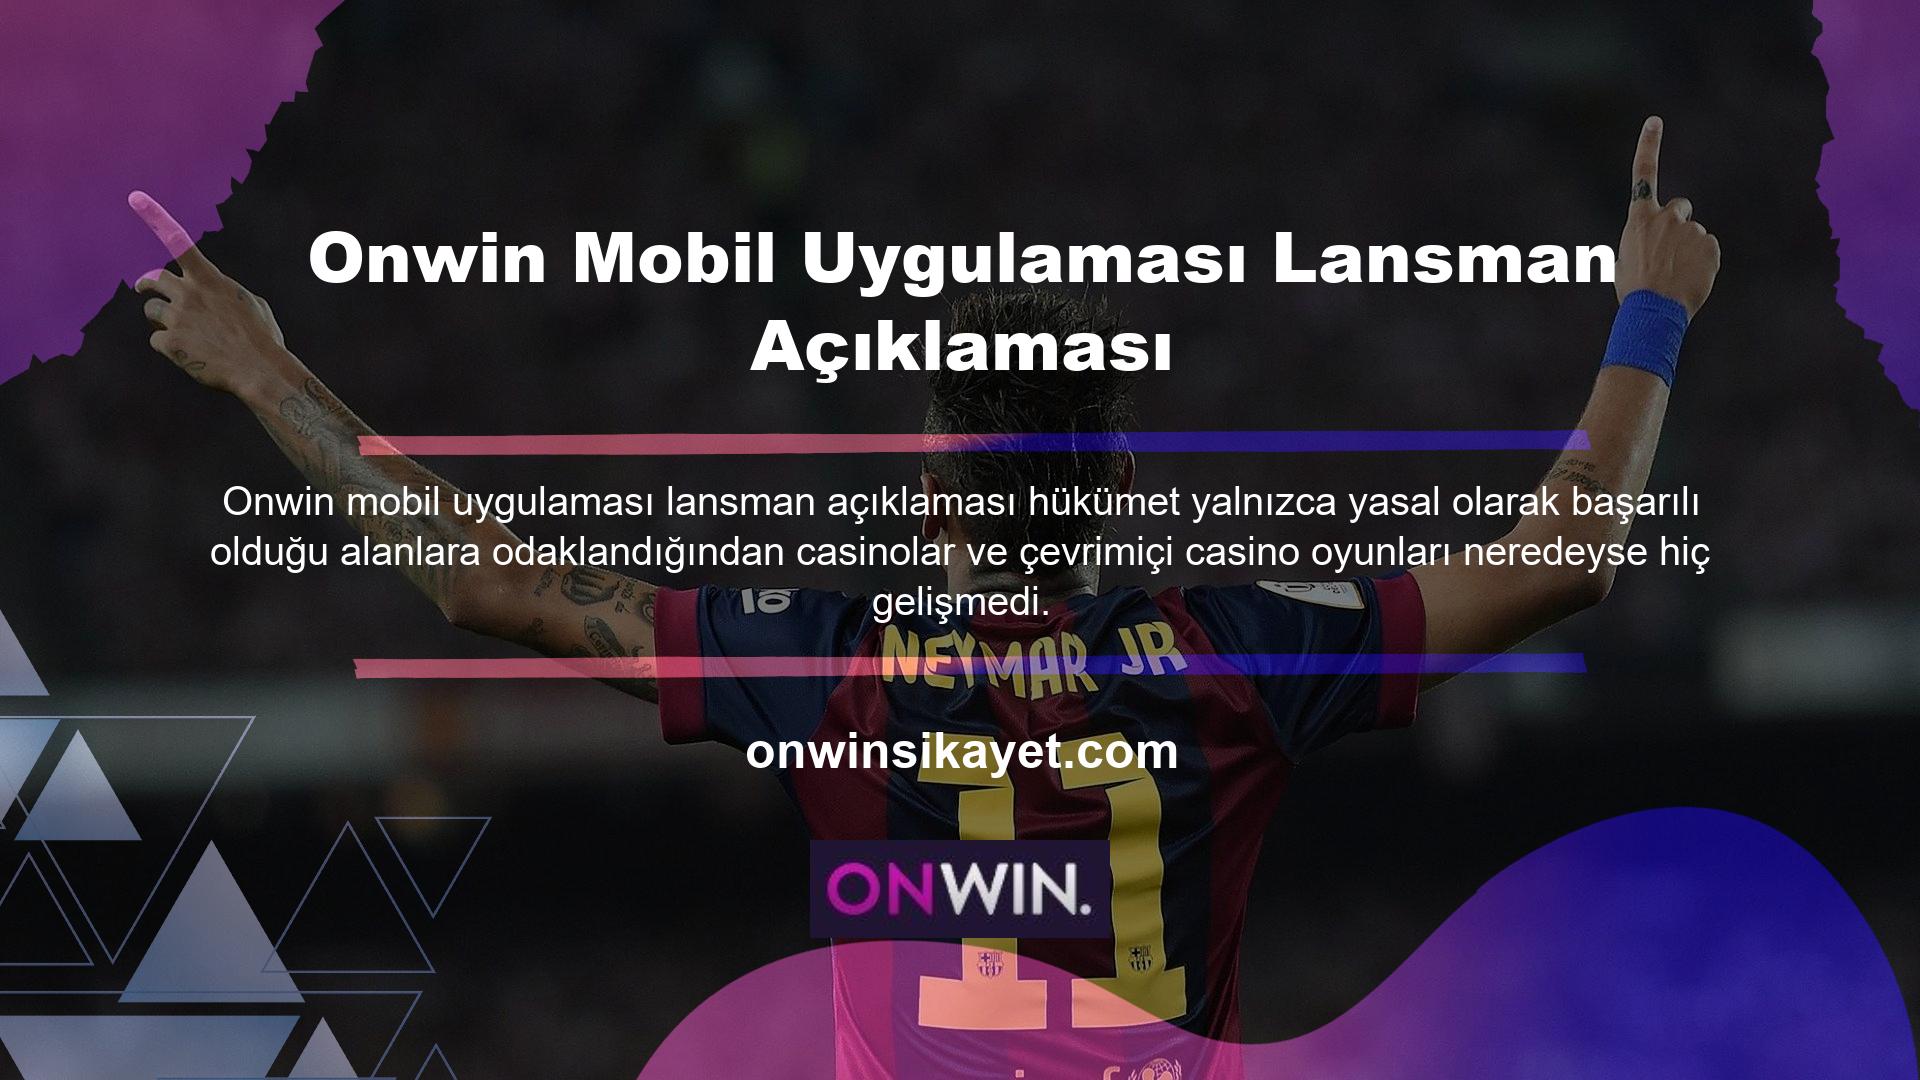 Onwin Açılış Bildirisi mobil uygulaması göçmenlik muhasebecileri arasında popülerdir